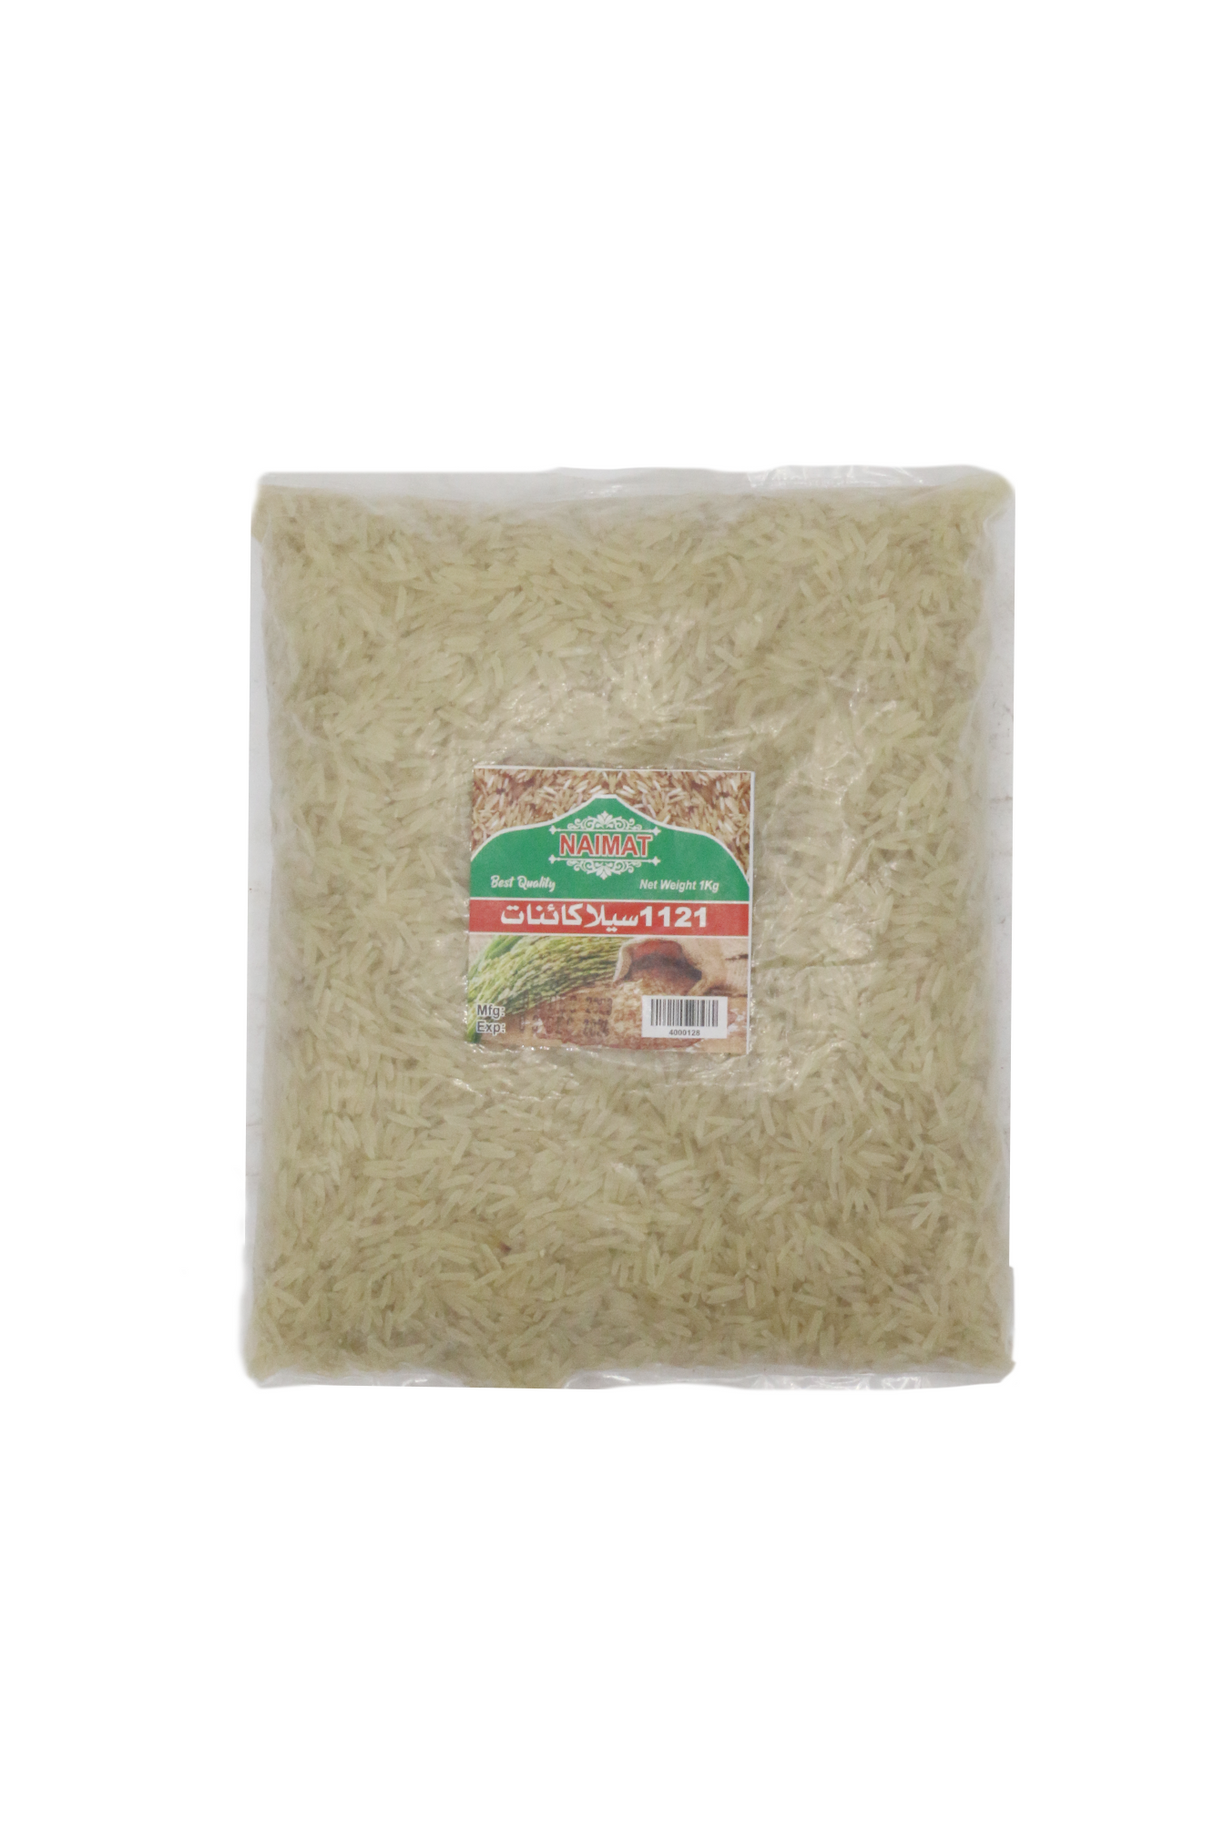 naimat rice pakki kainat 1kg